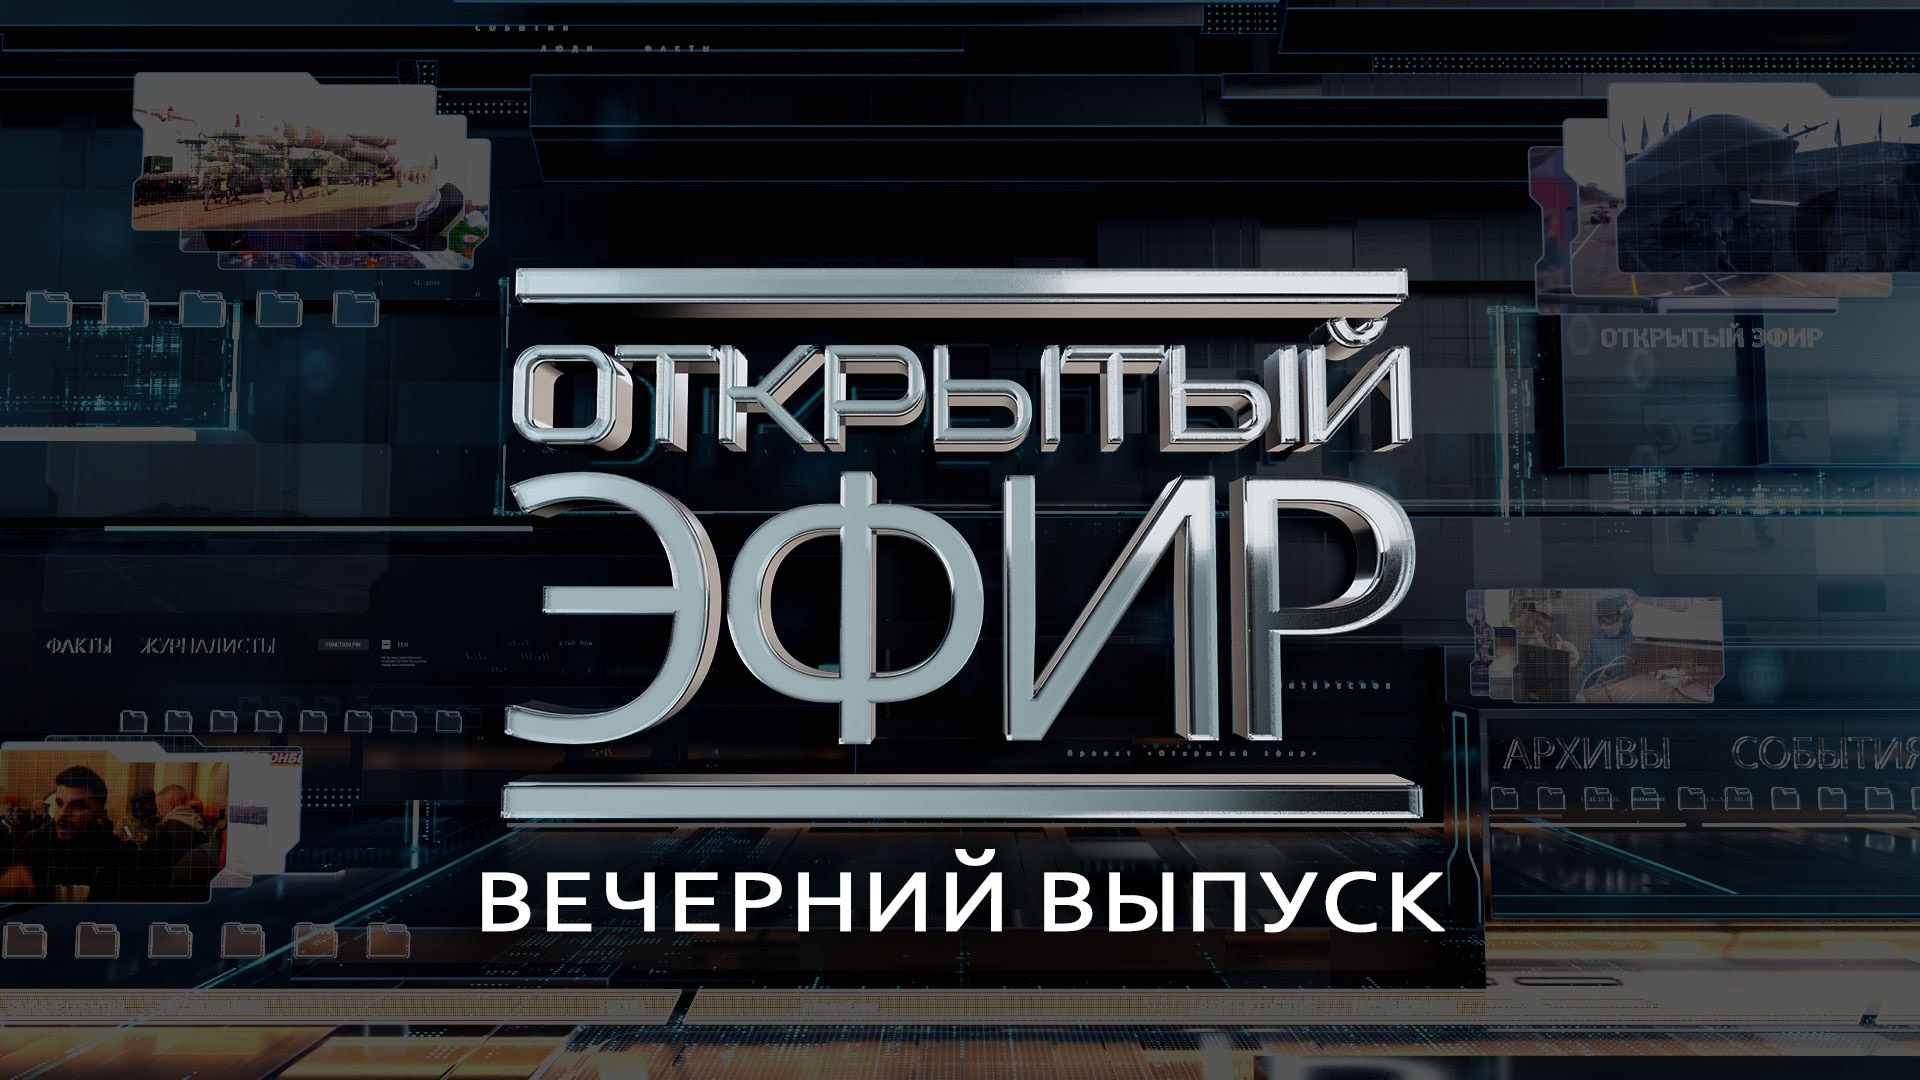 "Открытый эфир" о специальной военной операции в Донбассе. День 819